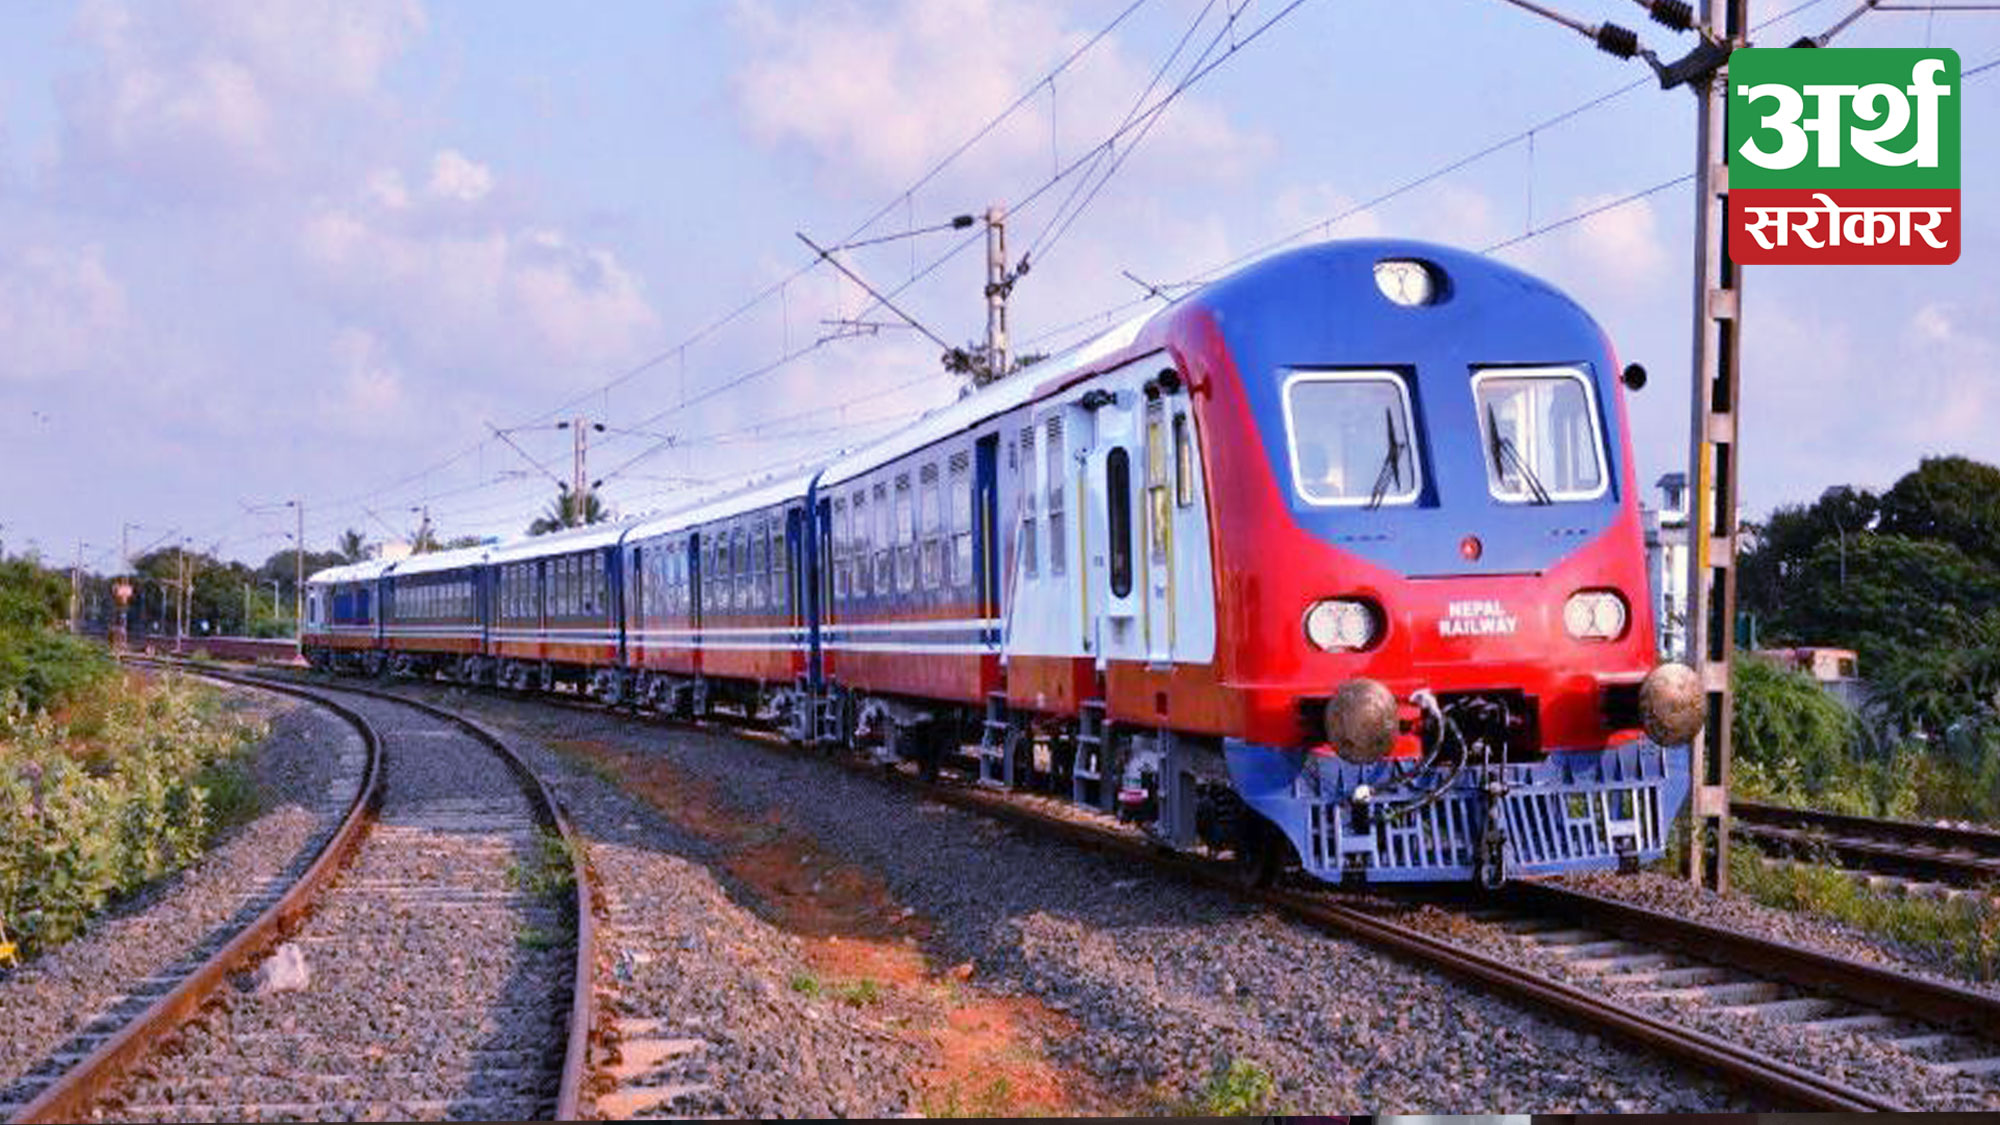 Transport fare for rail service declared